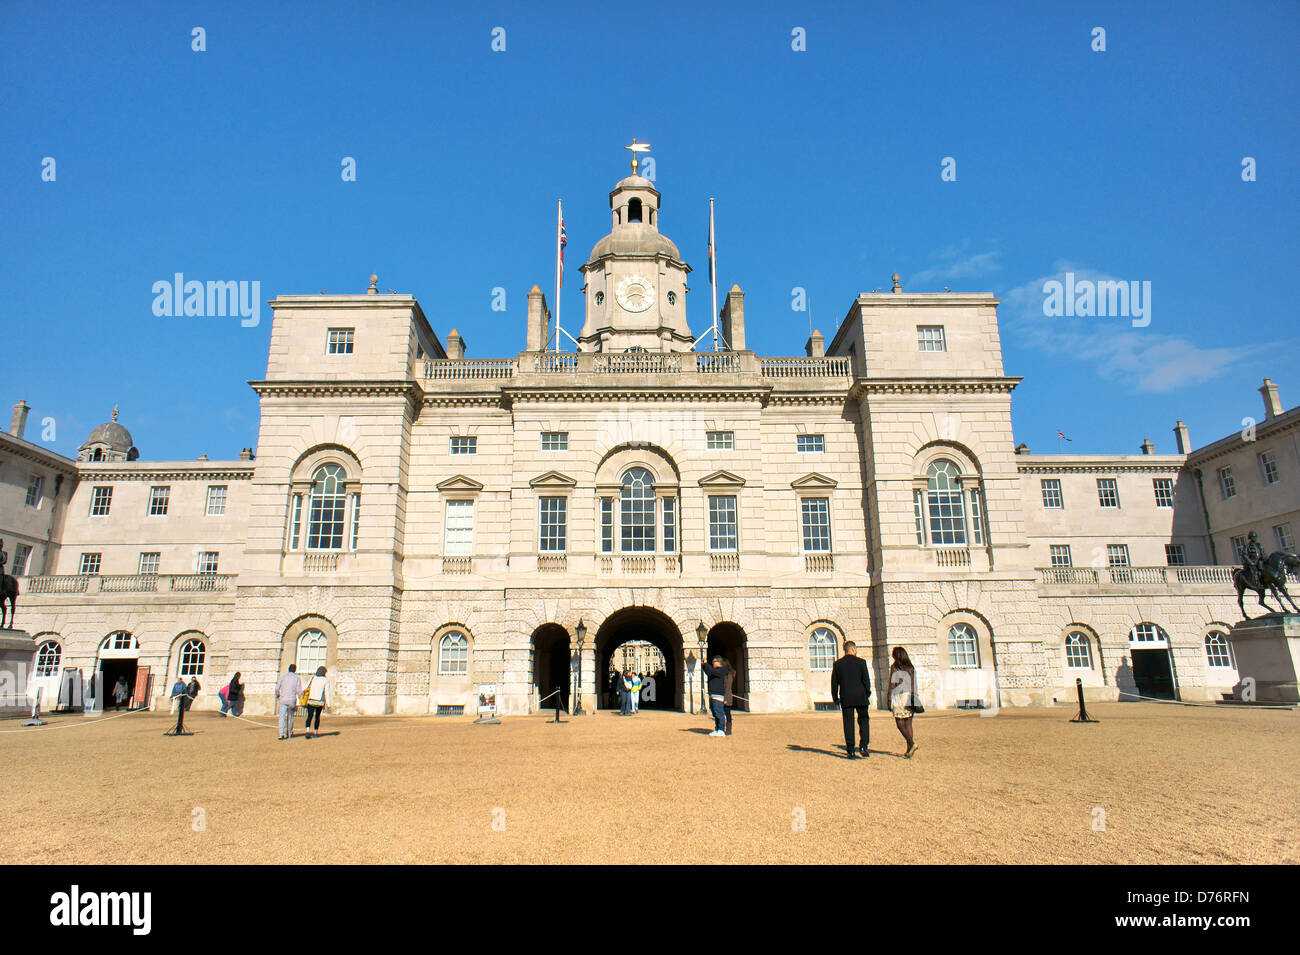 Los guardias a caballo. Edificio de estilo Palladian, Whitehall, Londres. Visto desde el desfile de guardias a caballo Foto de stock